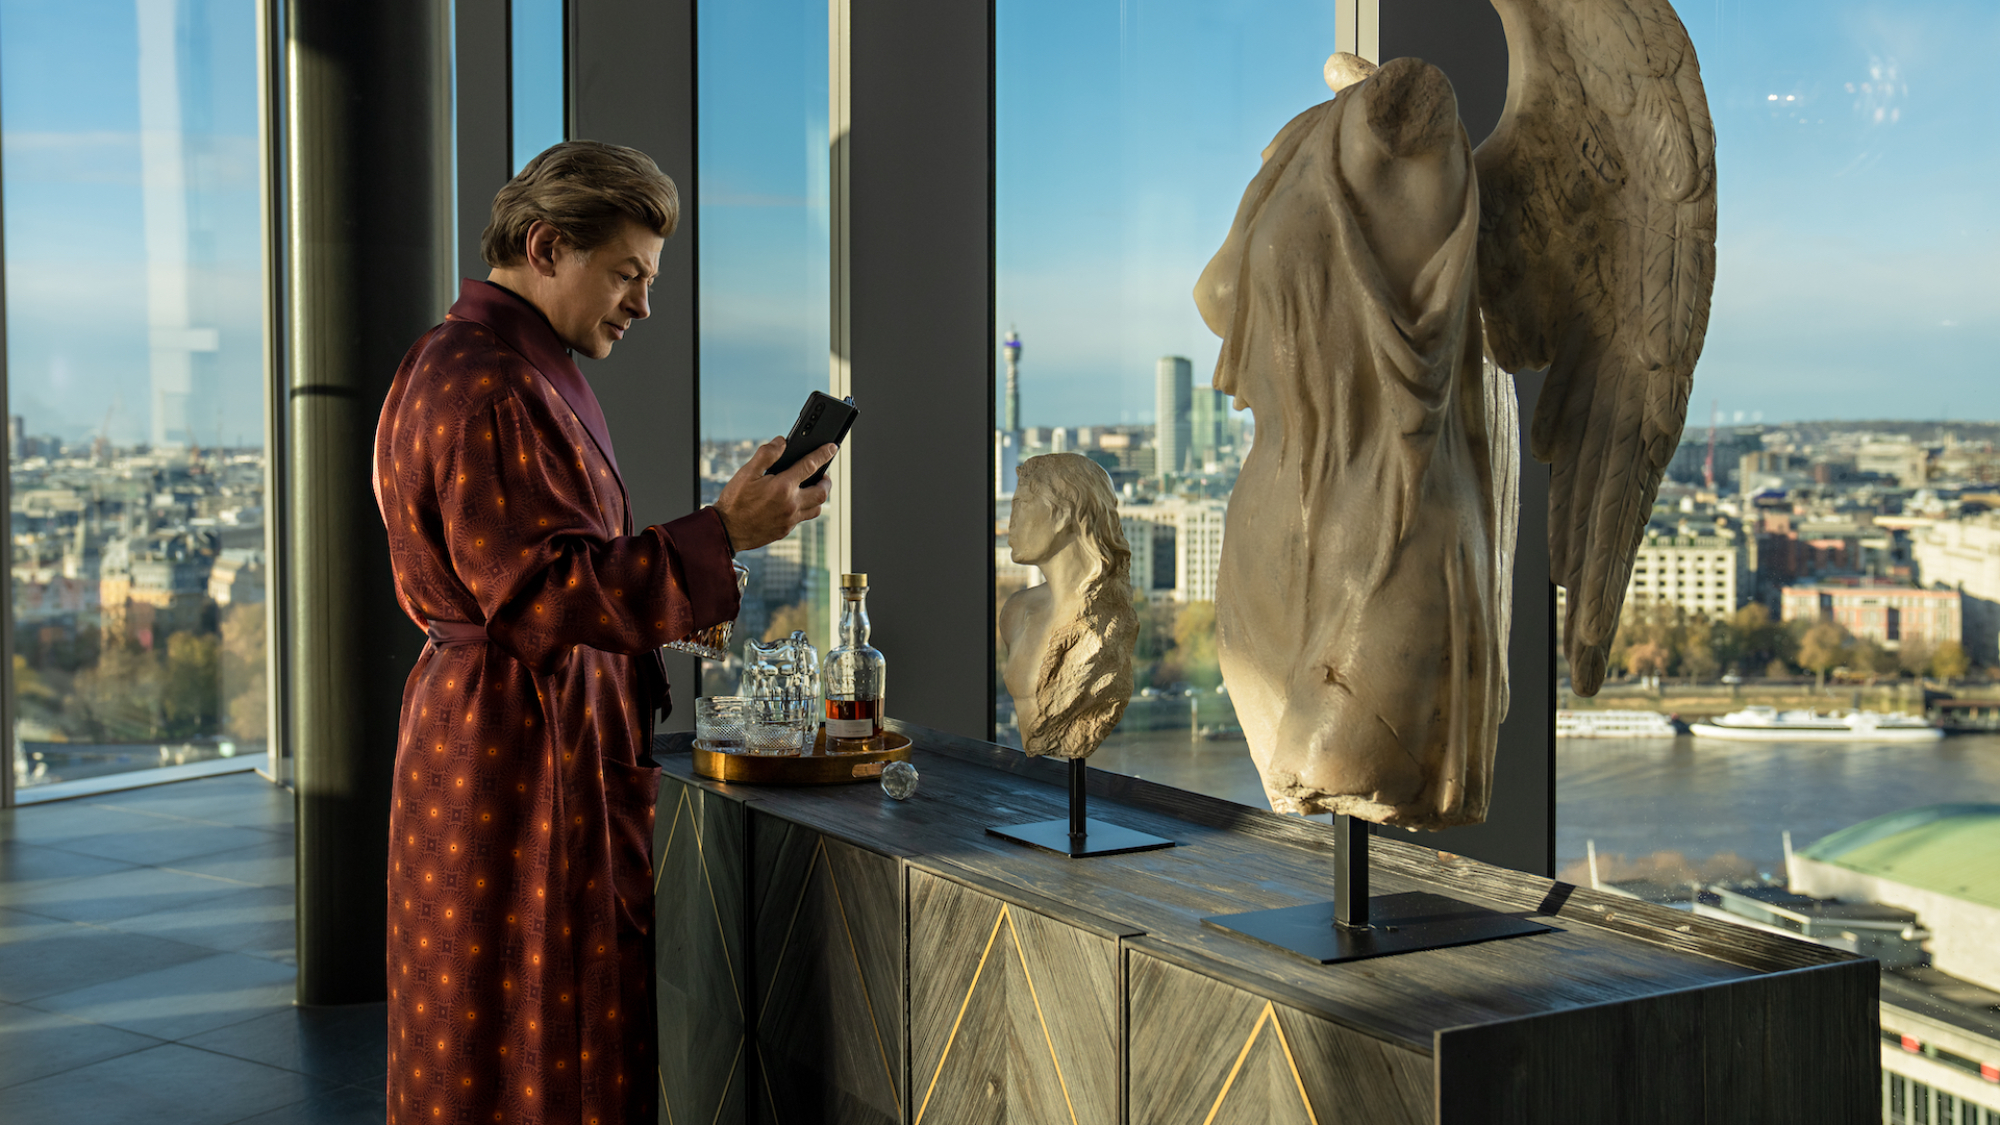 Un homme riche en peignoir utilise un téléphone pliable dans un appartement entièrement vitré près d'un buste en marbre.